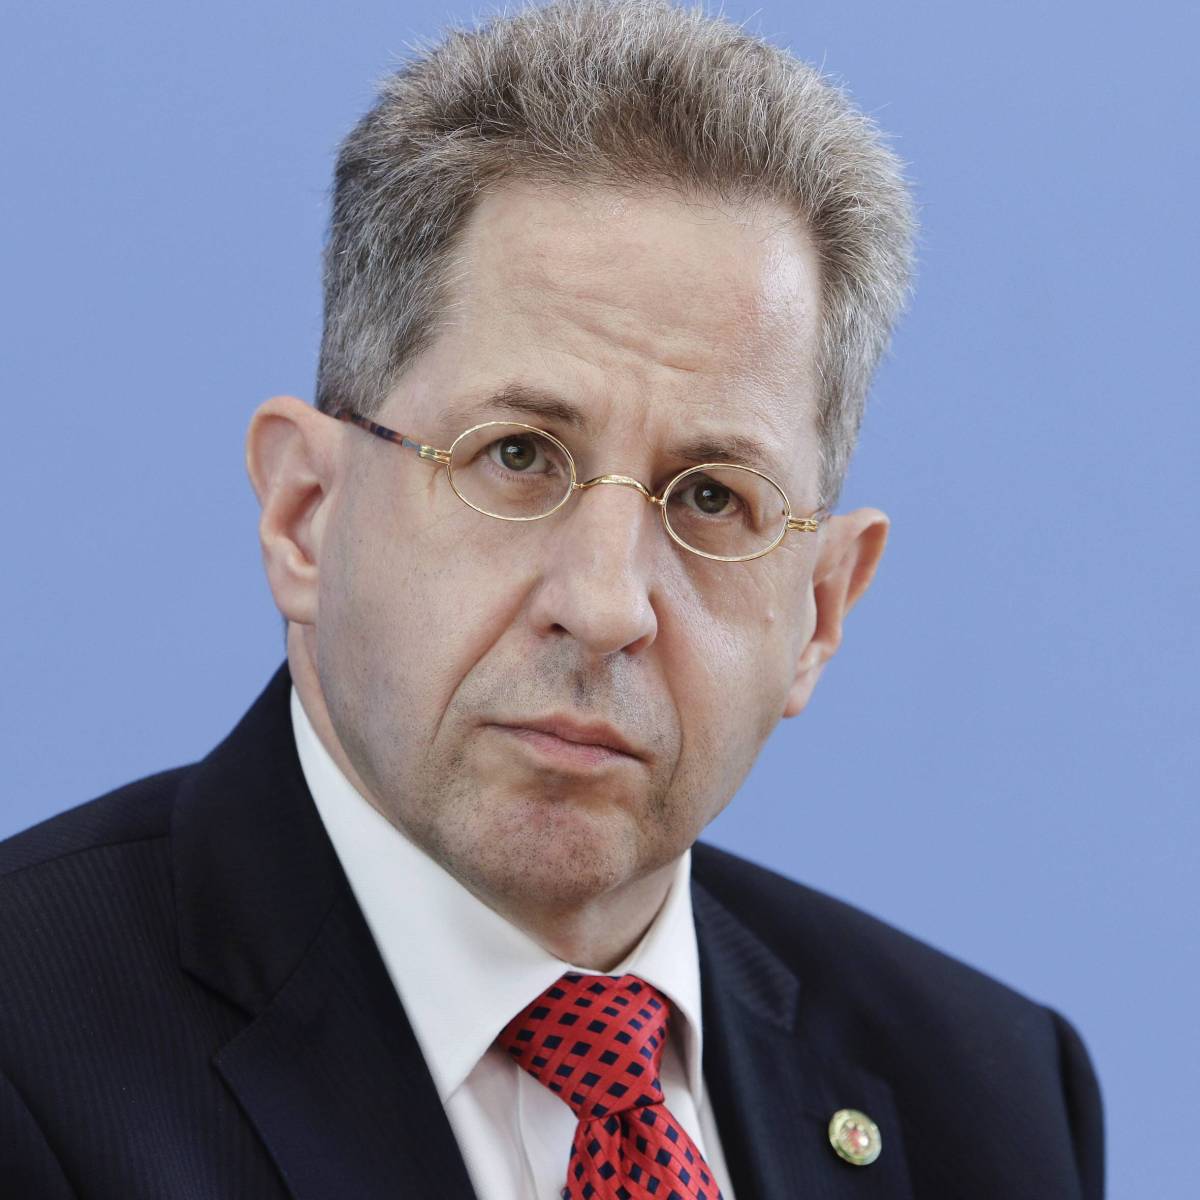 CDU: Partei will Hans-Georg Maaßen rauswerfen – Ausschlussverfahren „unabwendbar“